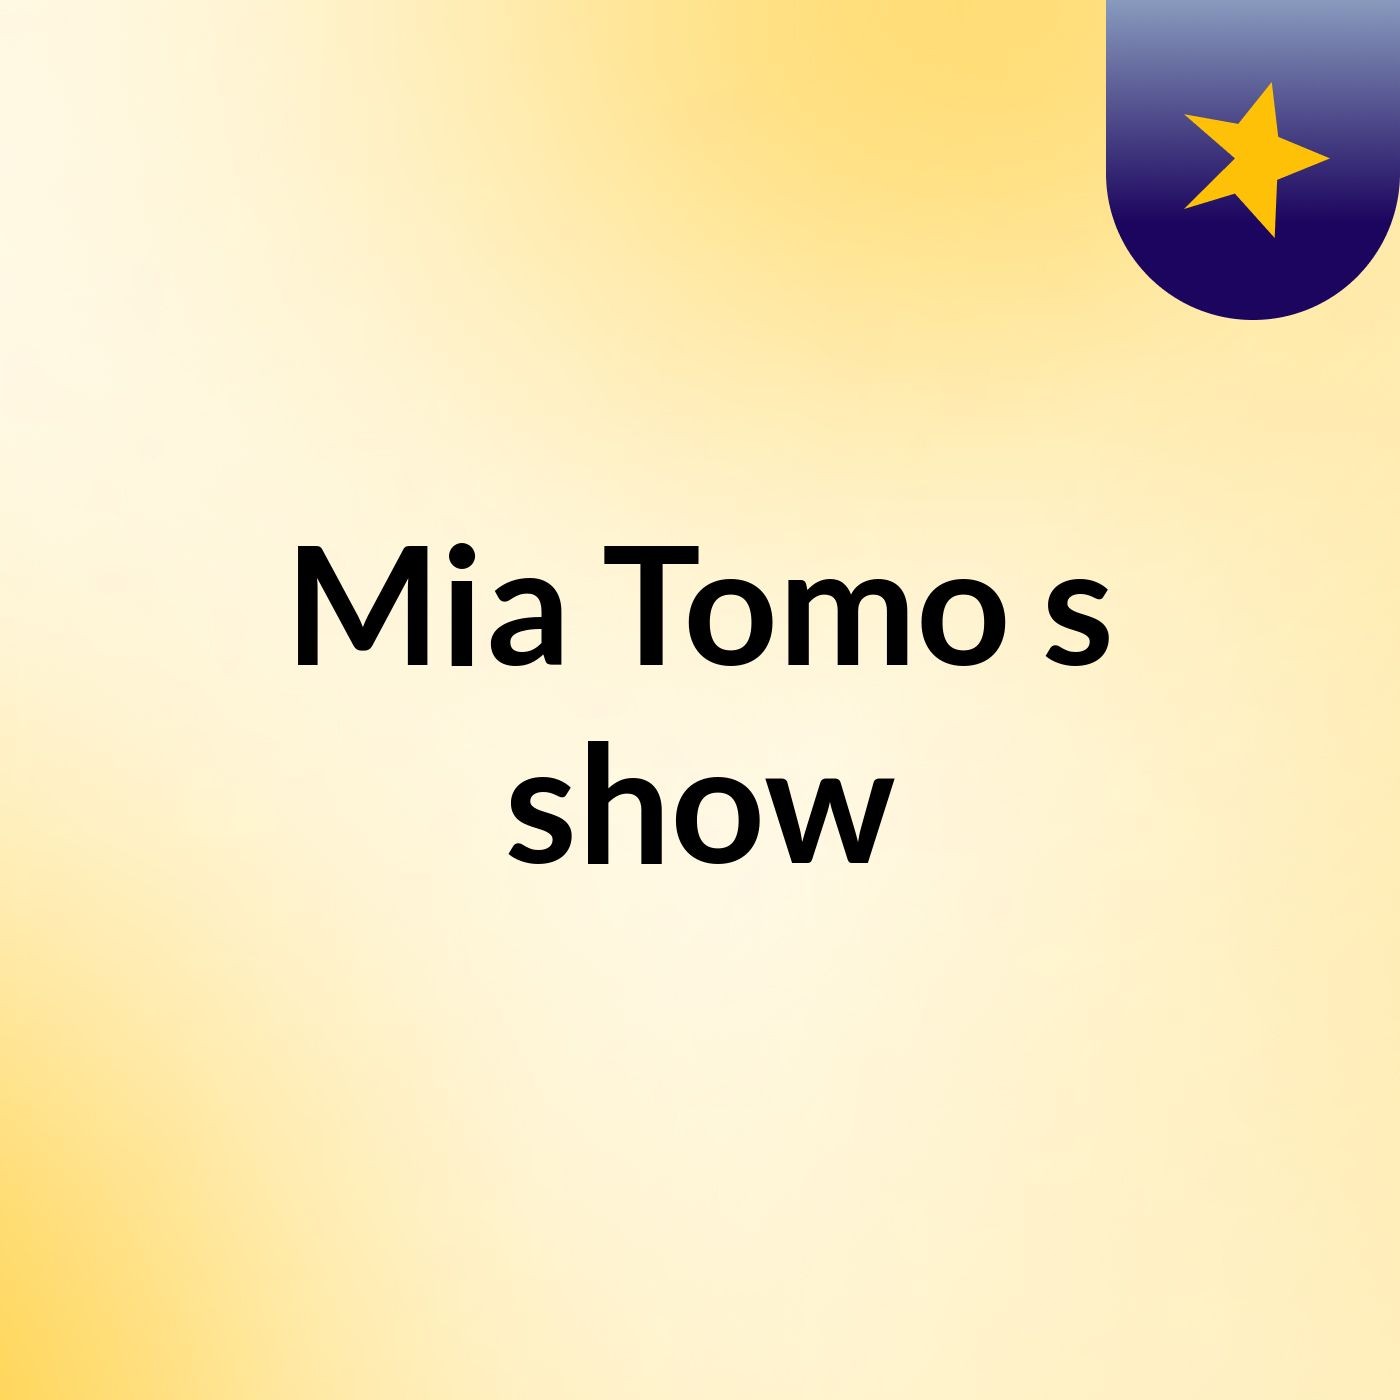 Mia Tomo's show